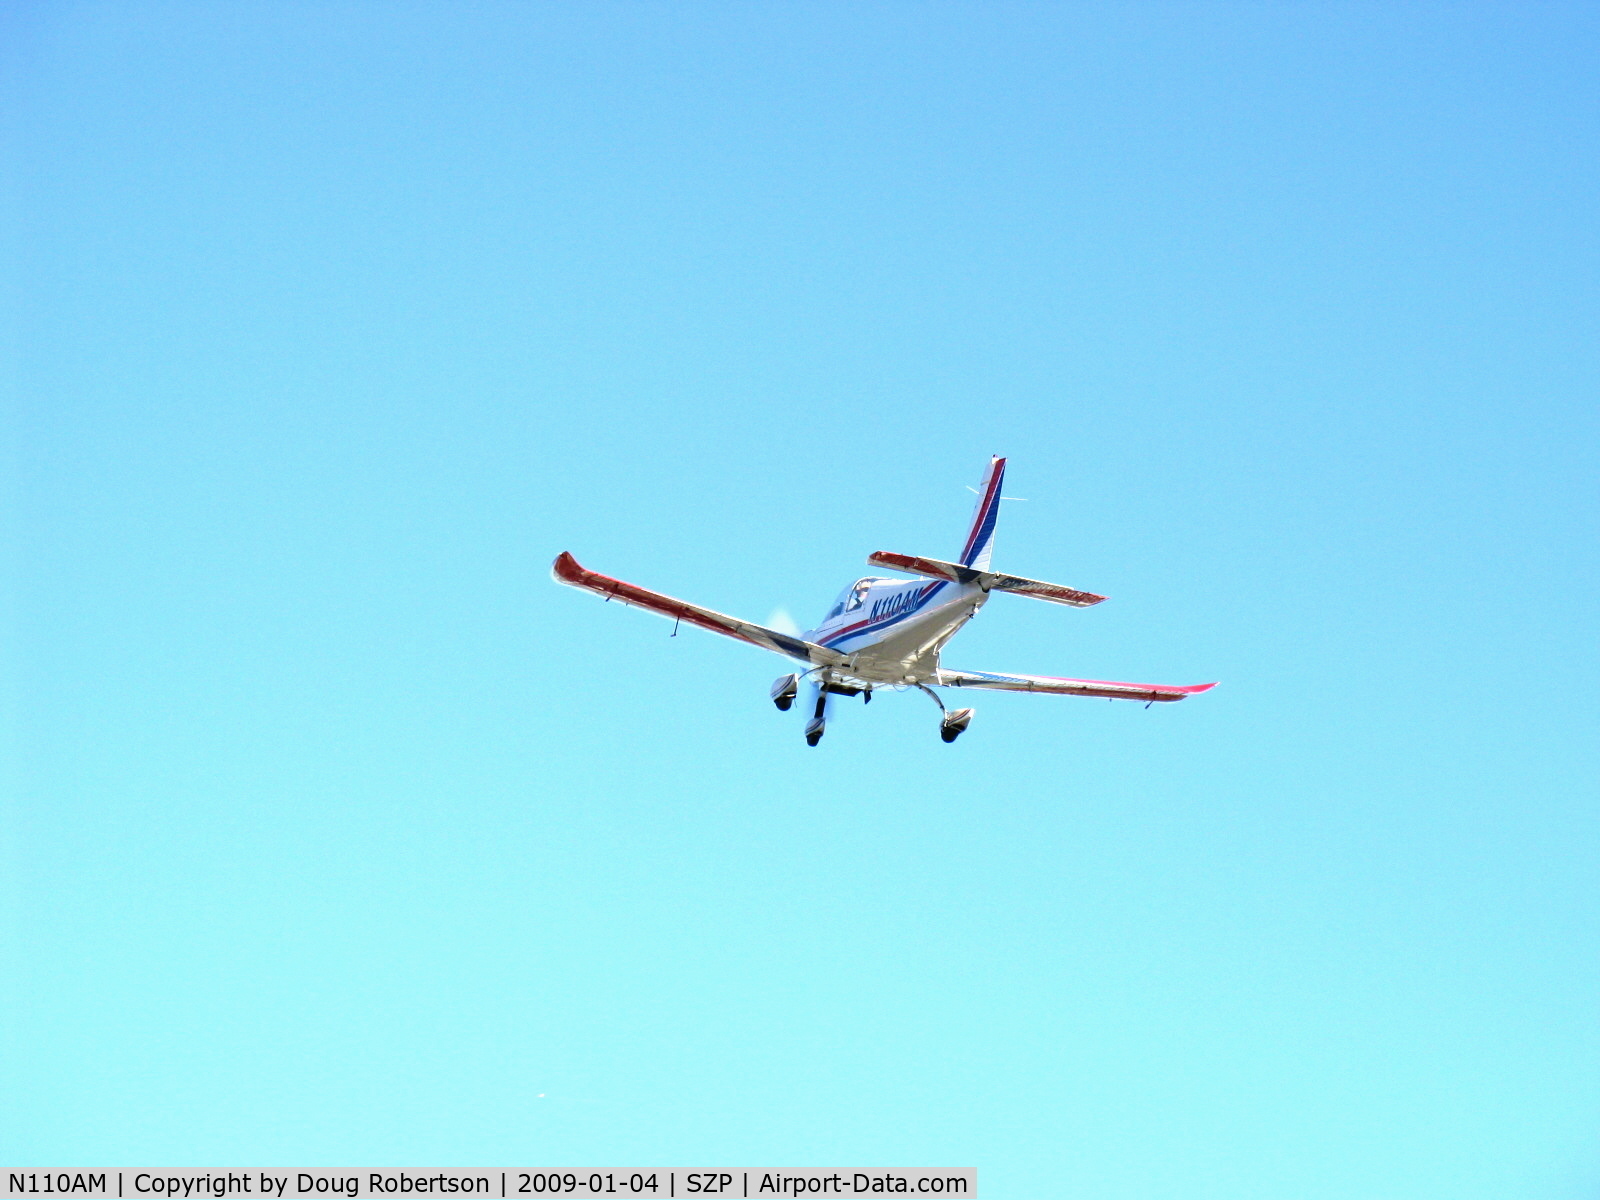 N110AM, 1996 Zlin Z-242L C/N 0727, 1996 Moravan Zlin Z242L fully aerobatic, Lycoming AEIO-360-B 200 Hp, takeoff climb Rwy 04